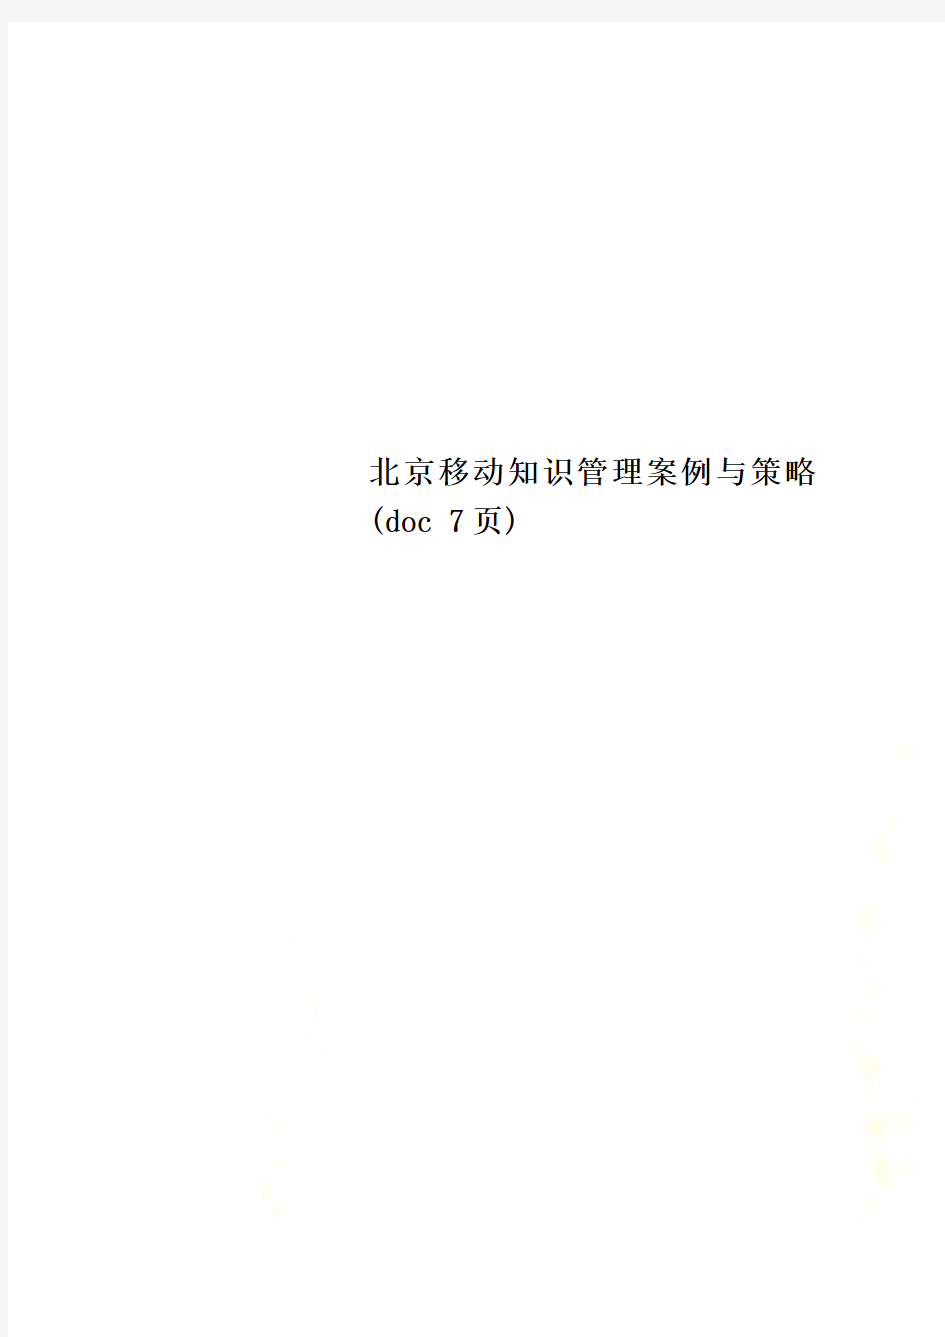 北京移动知识管理案例与策略(doc 7页)